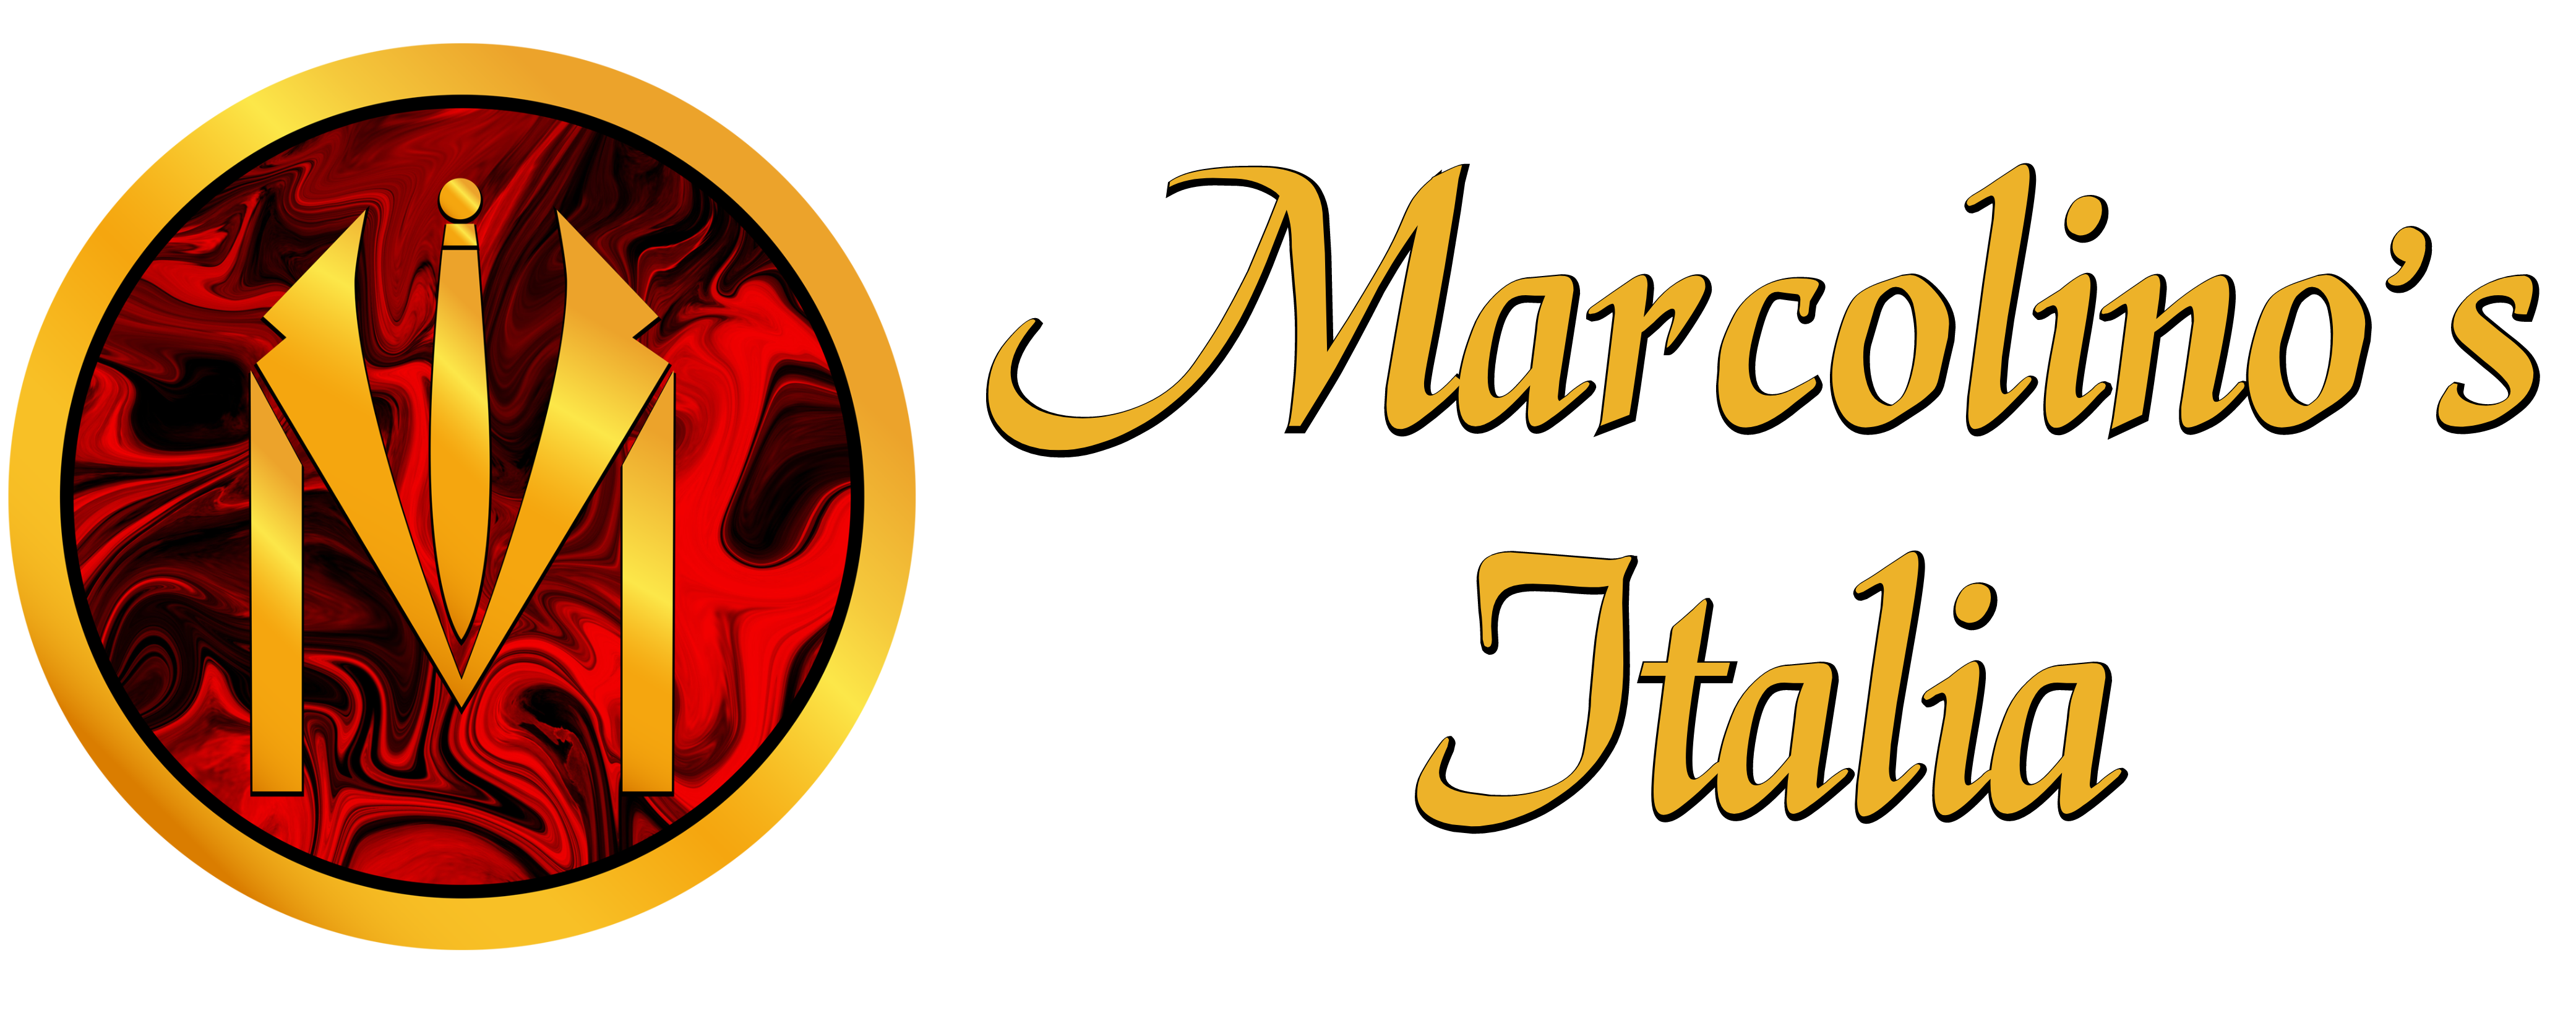 Marcolinos Italia Main Logo Full Size